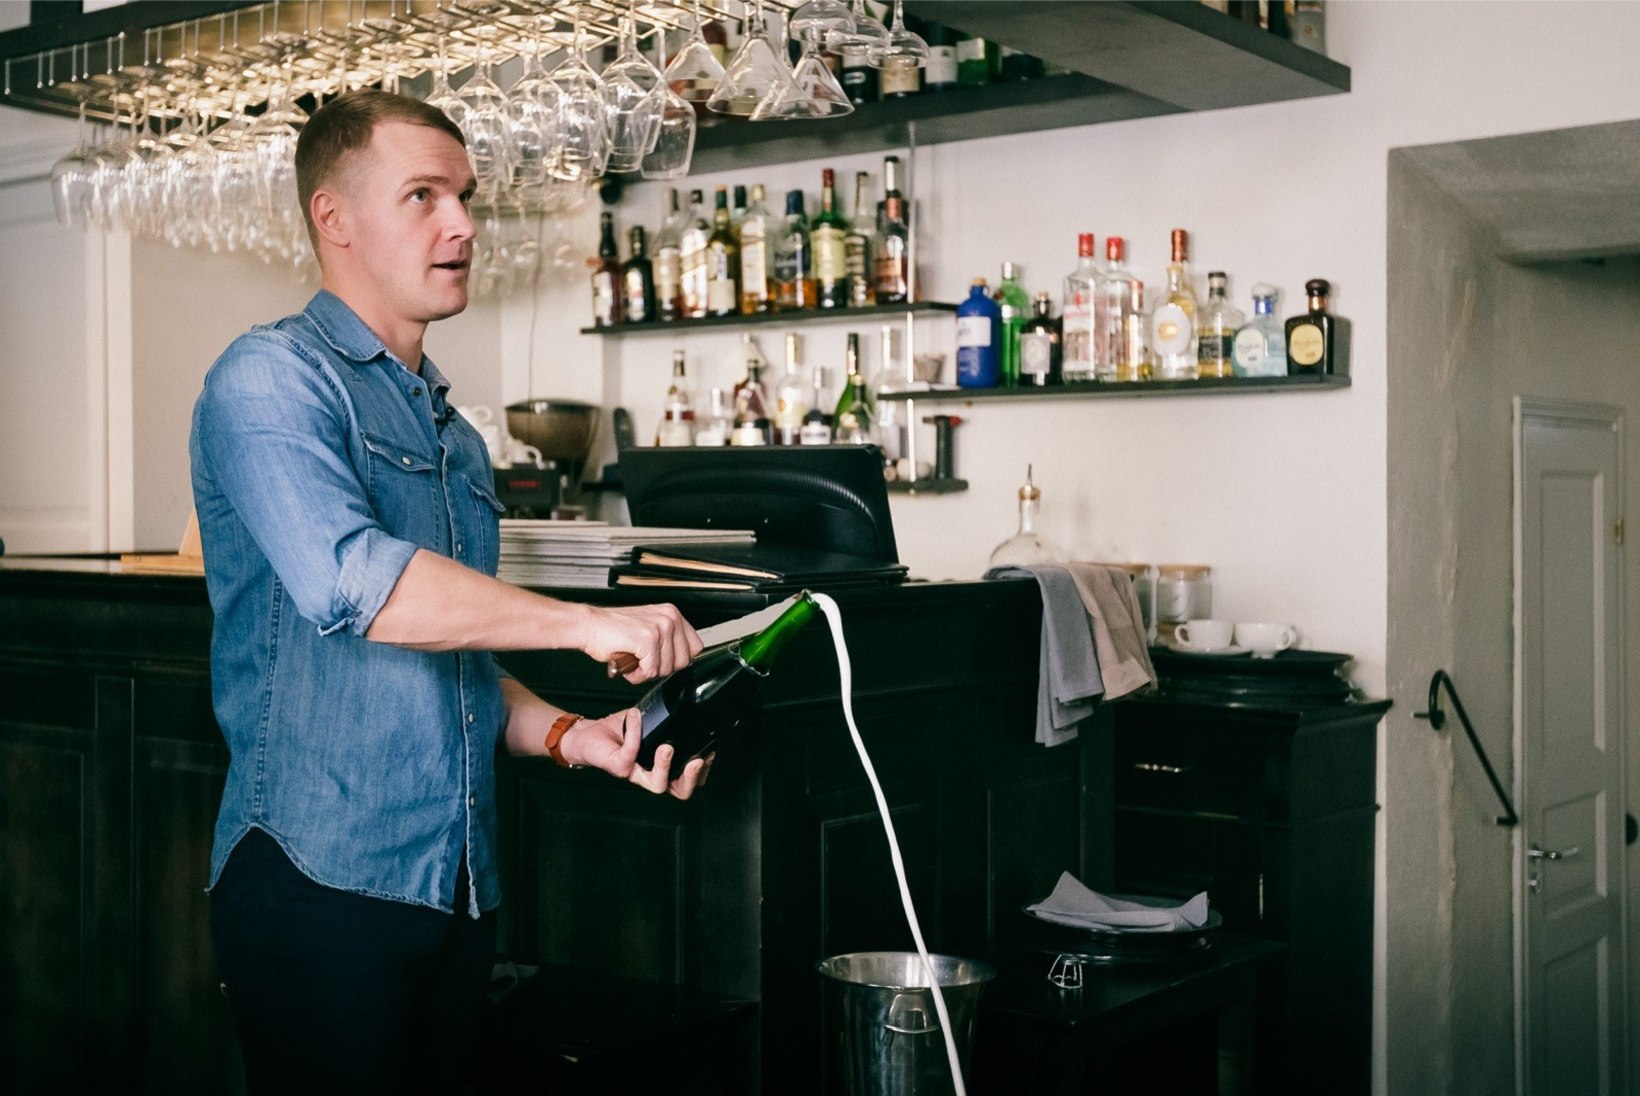 VIDEO | Ott Lepland näitab, kuidas avada šampanjapudelit sabraažmeetodil. Palume kodus seda mitte järele teha!